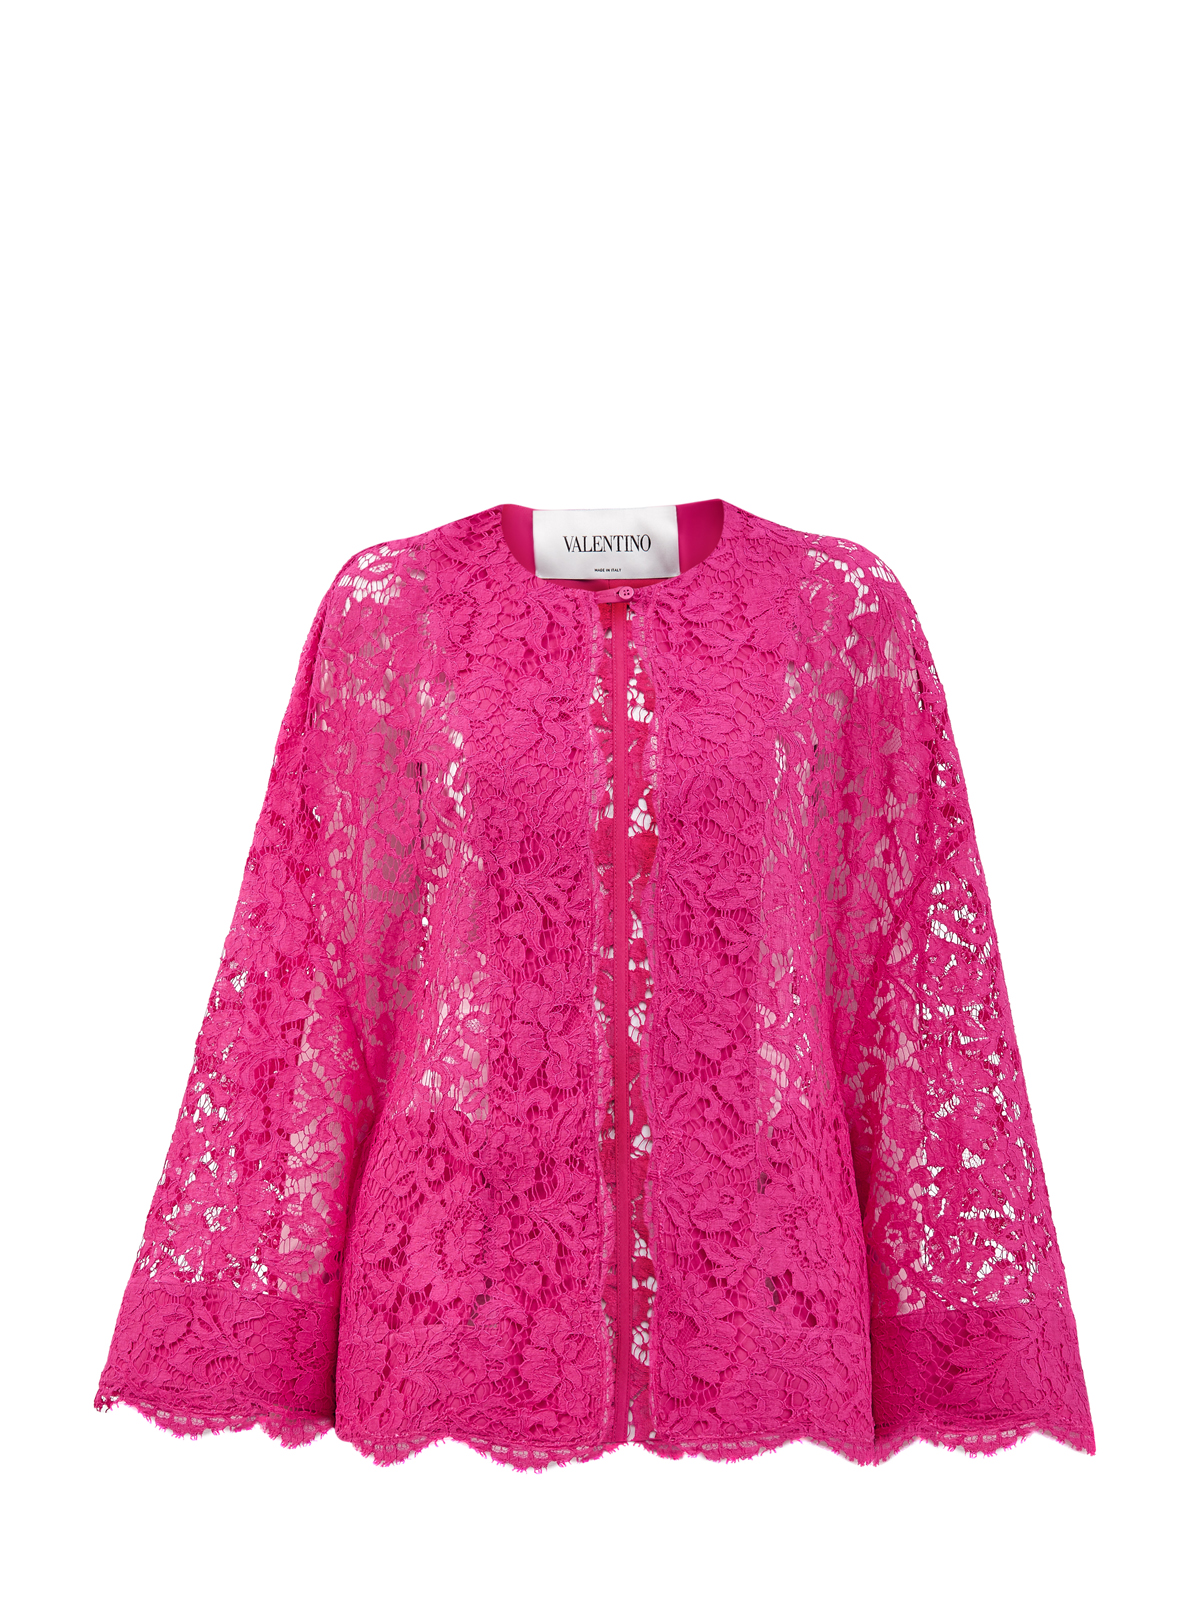 Жакет ручной работы из ткани Blossom Macramé VALENTINO, цвет розовый, размер 44